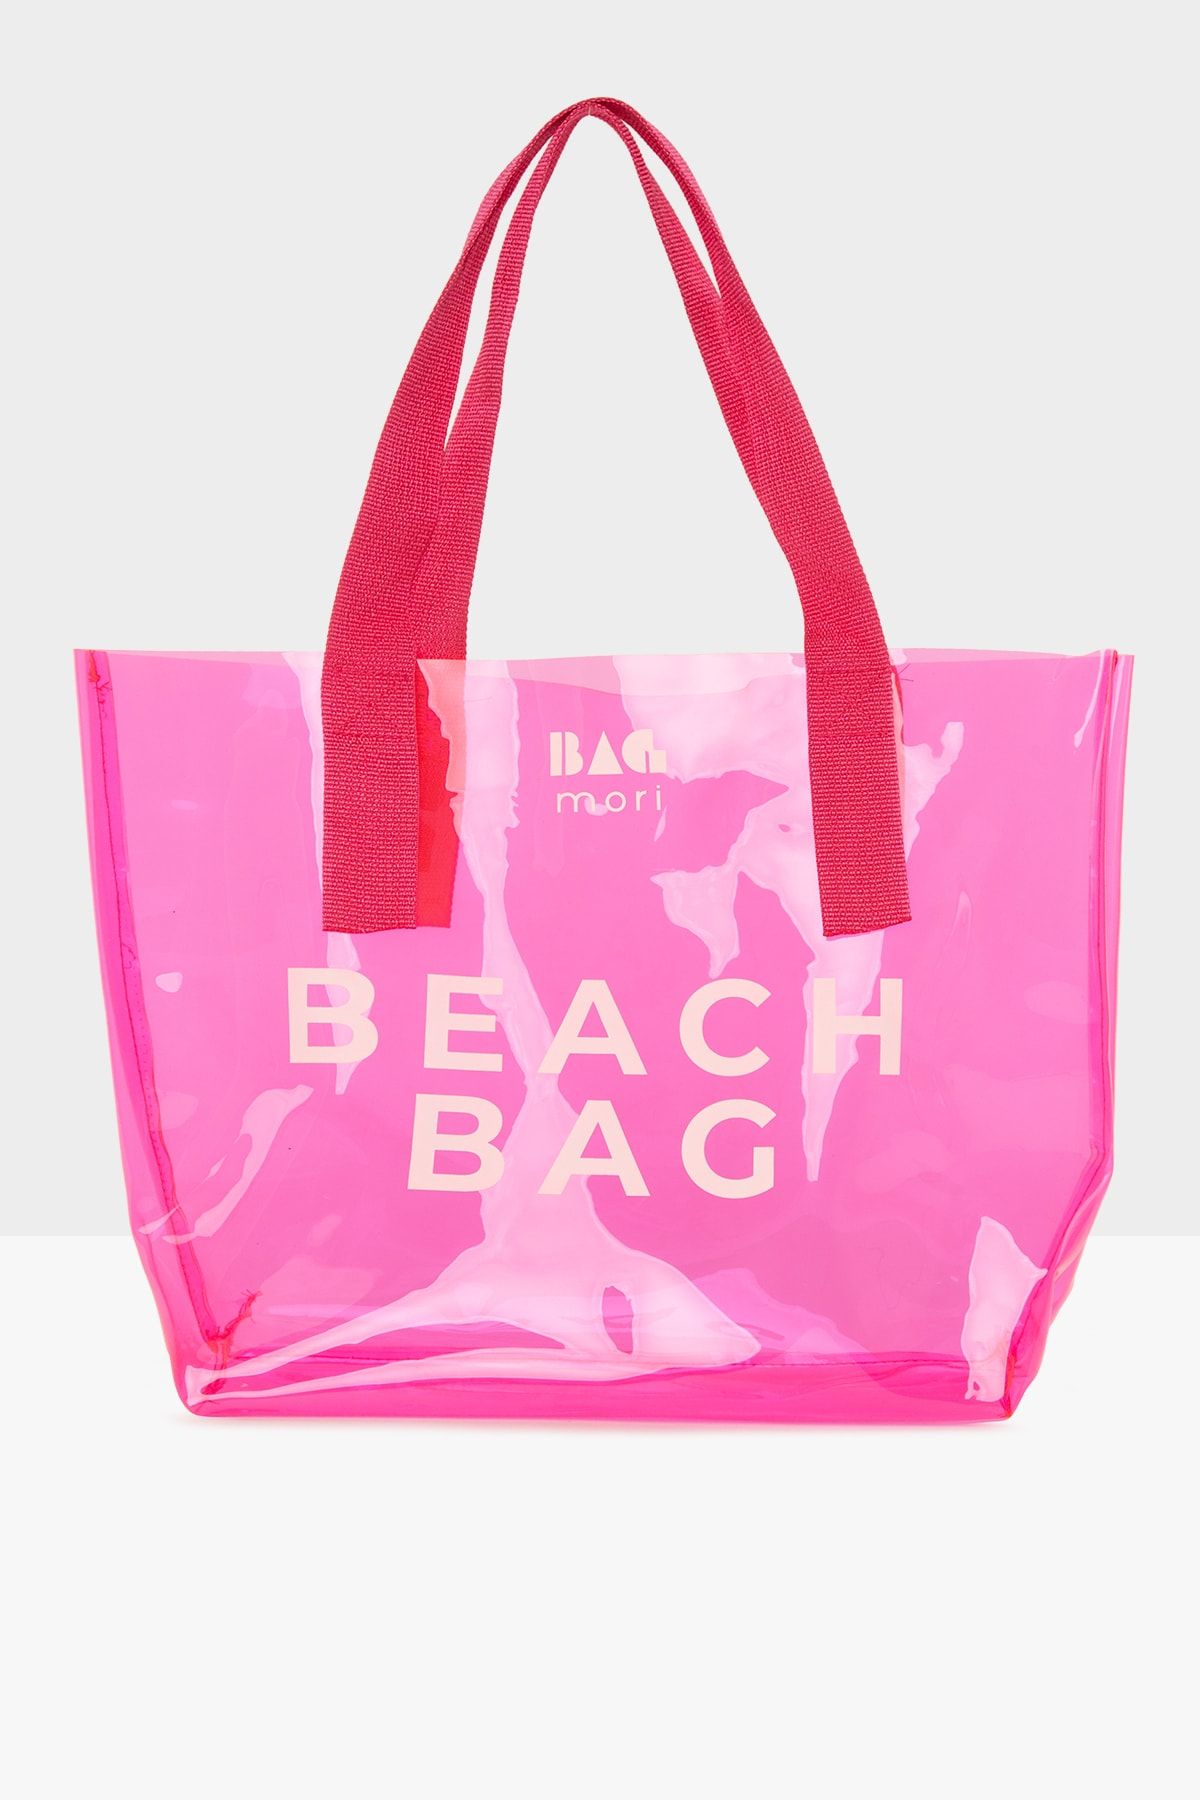 Bagmori Fuşya Kadın Beach Bag Baskılı Şeffaf Plaj Çantası M000007257